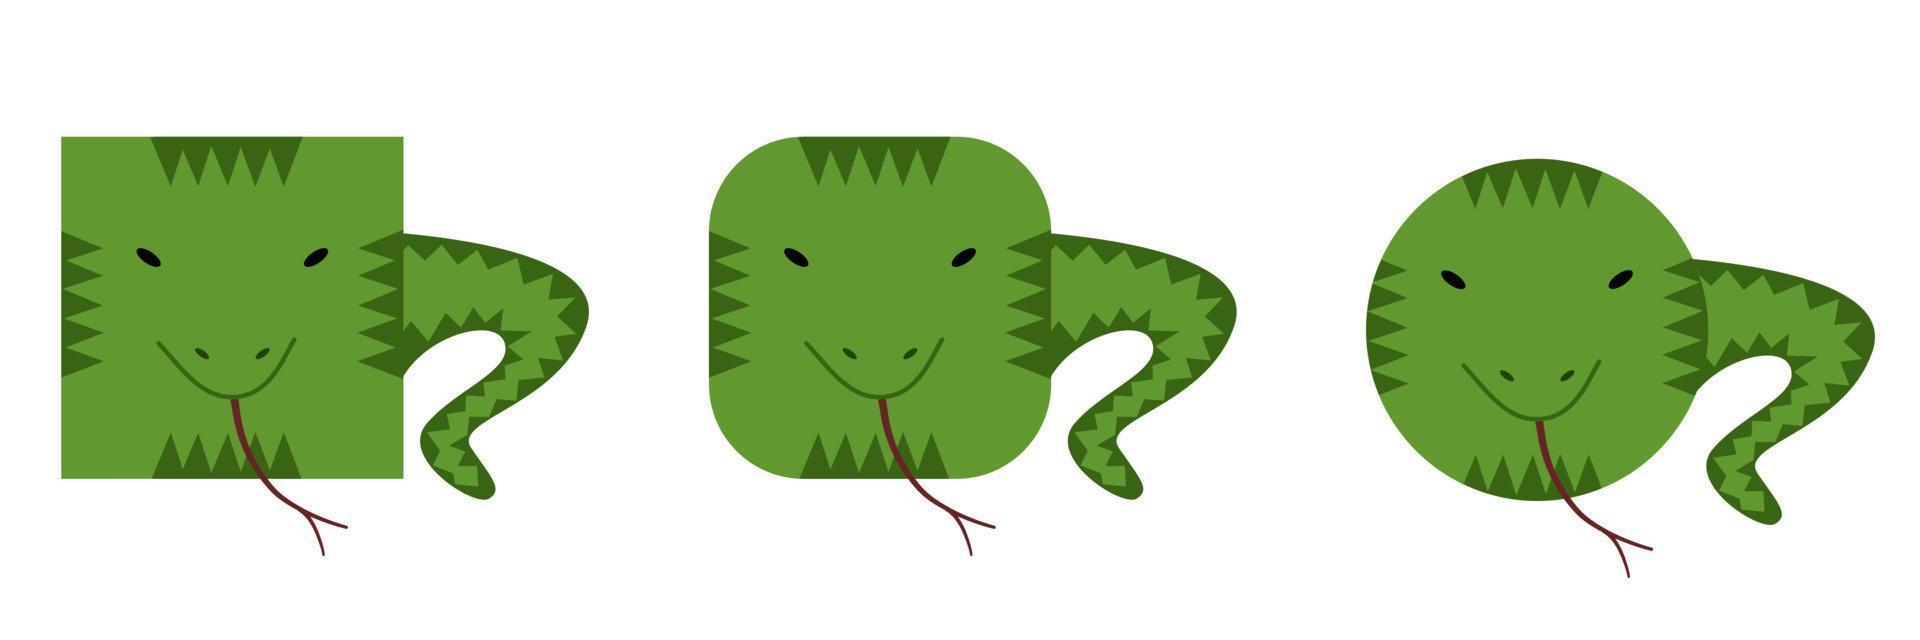 en uppsättning djur av fyrkantig och rund form. vektor illustration av en orm